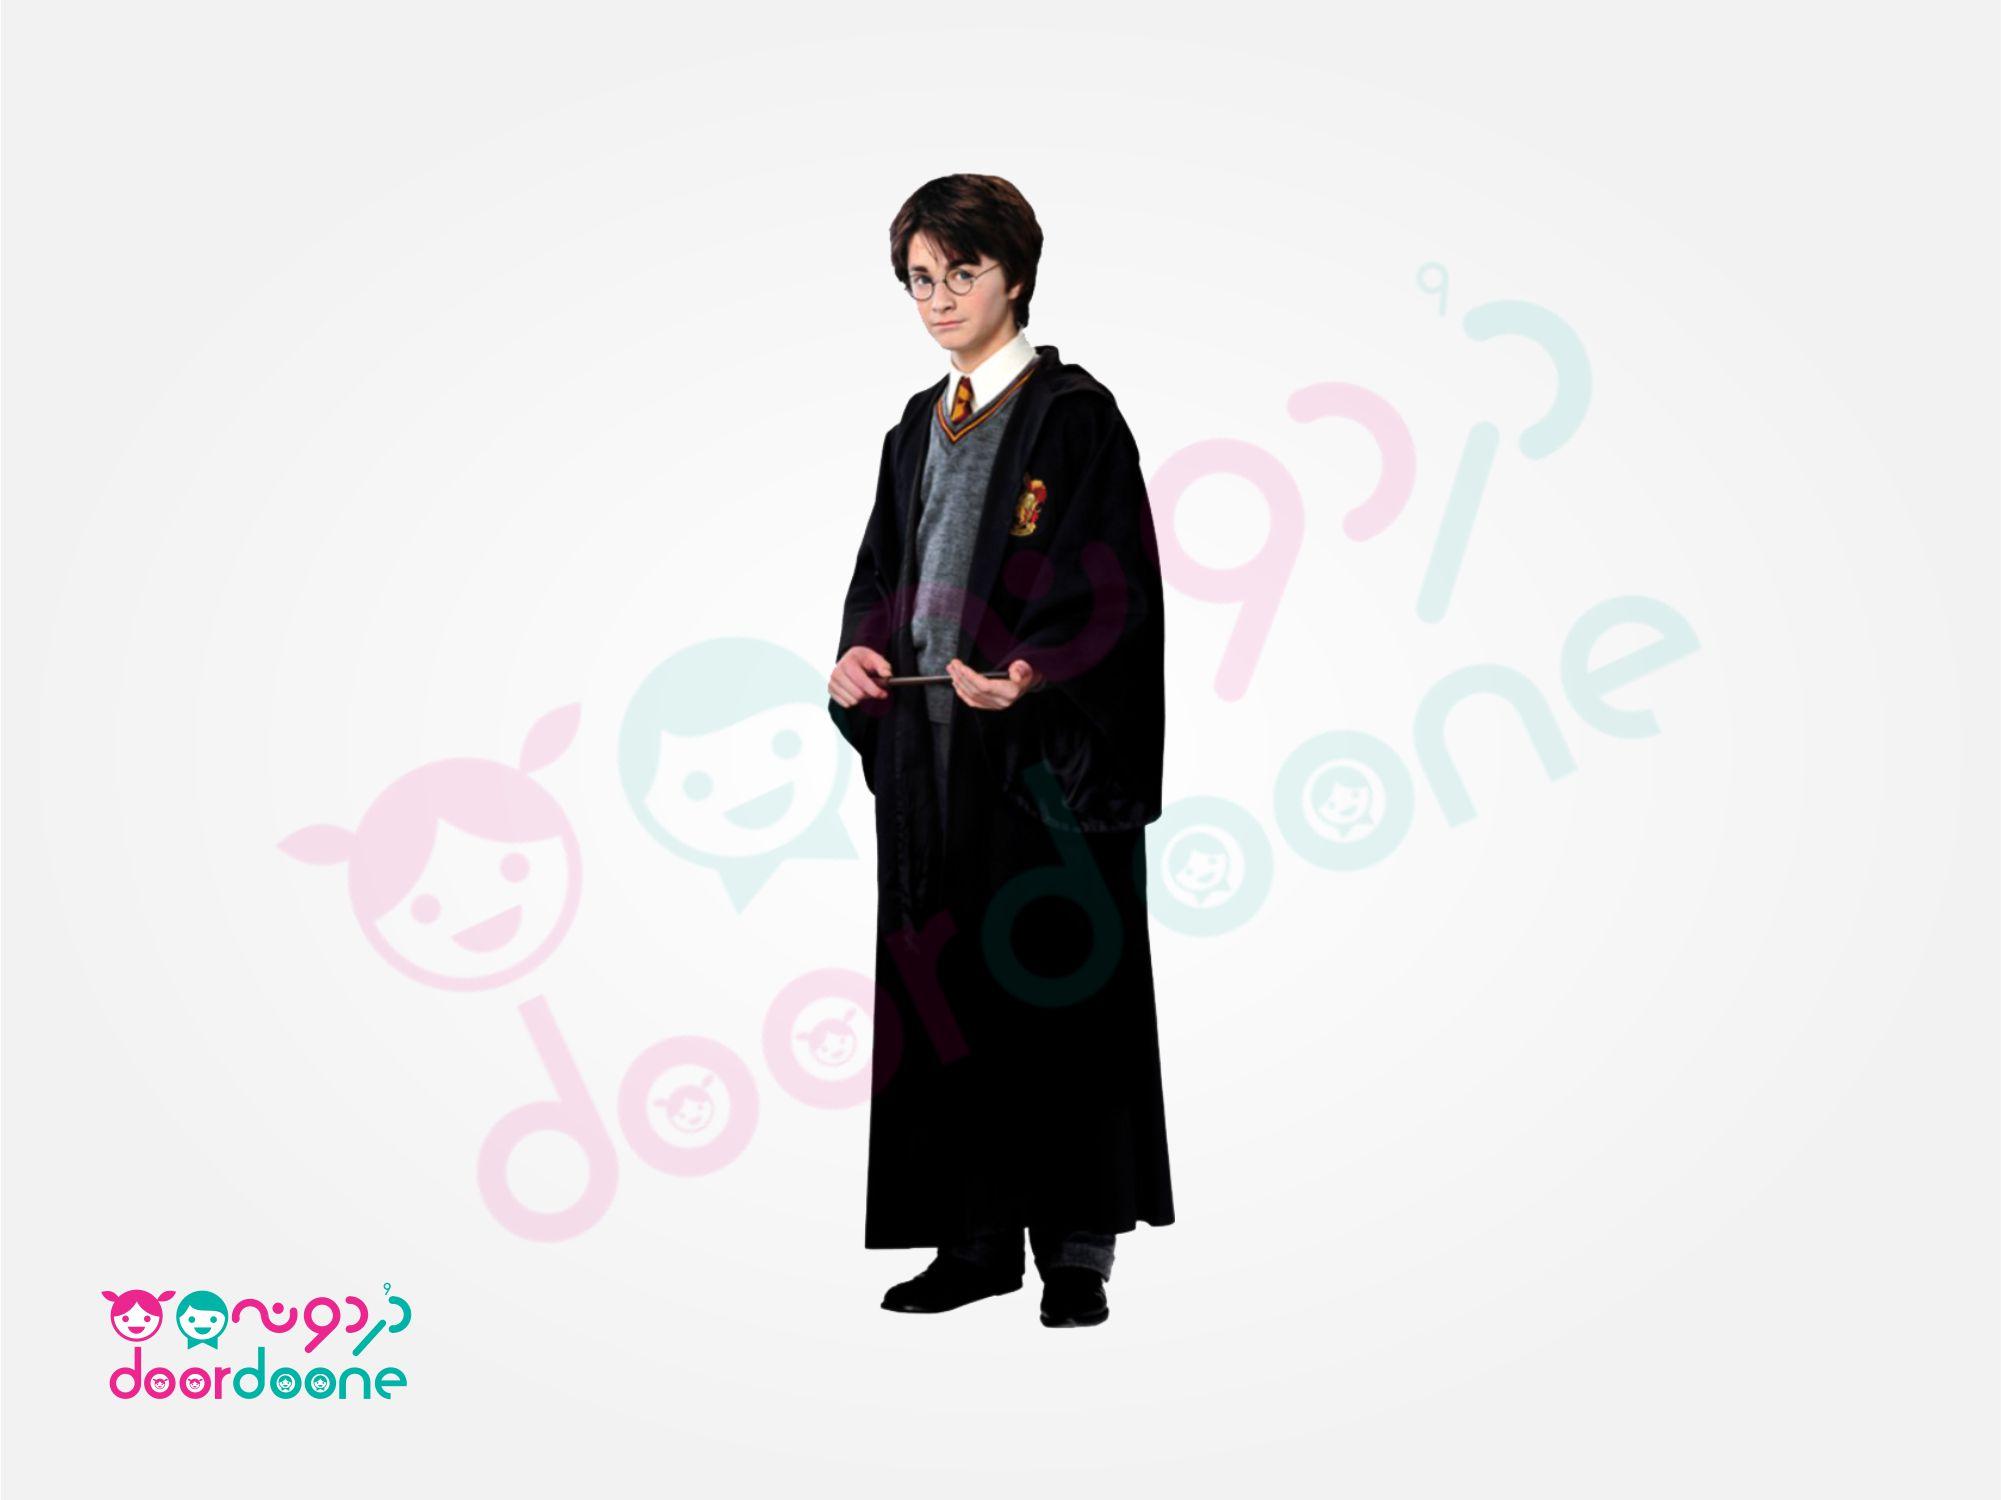 تیشرت تم هری پاتر (Harry Potter) (سایز 3) - بچه گانه